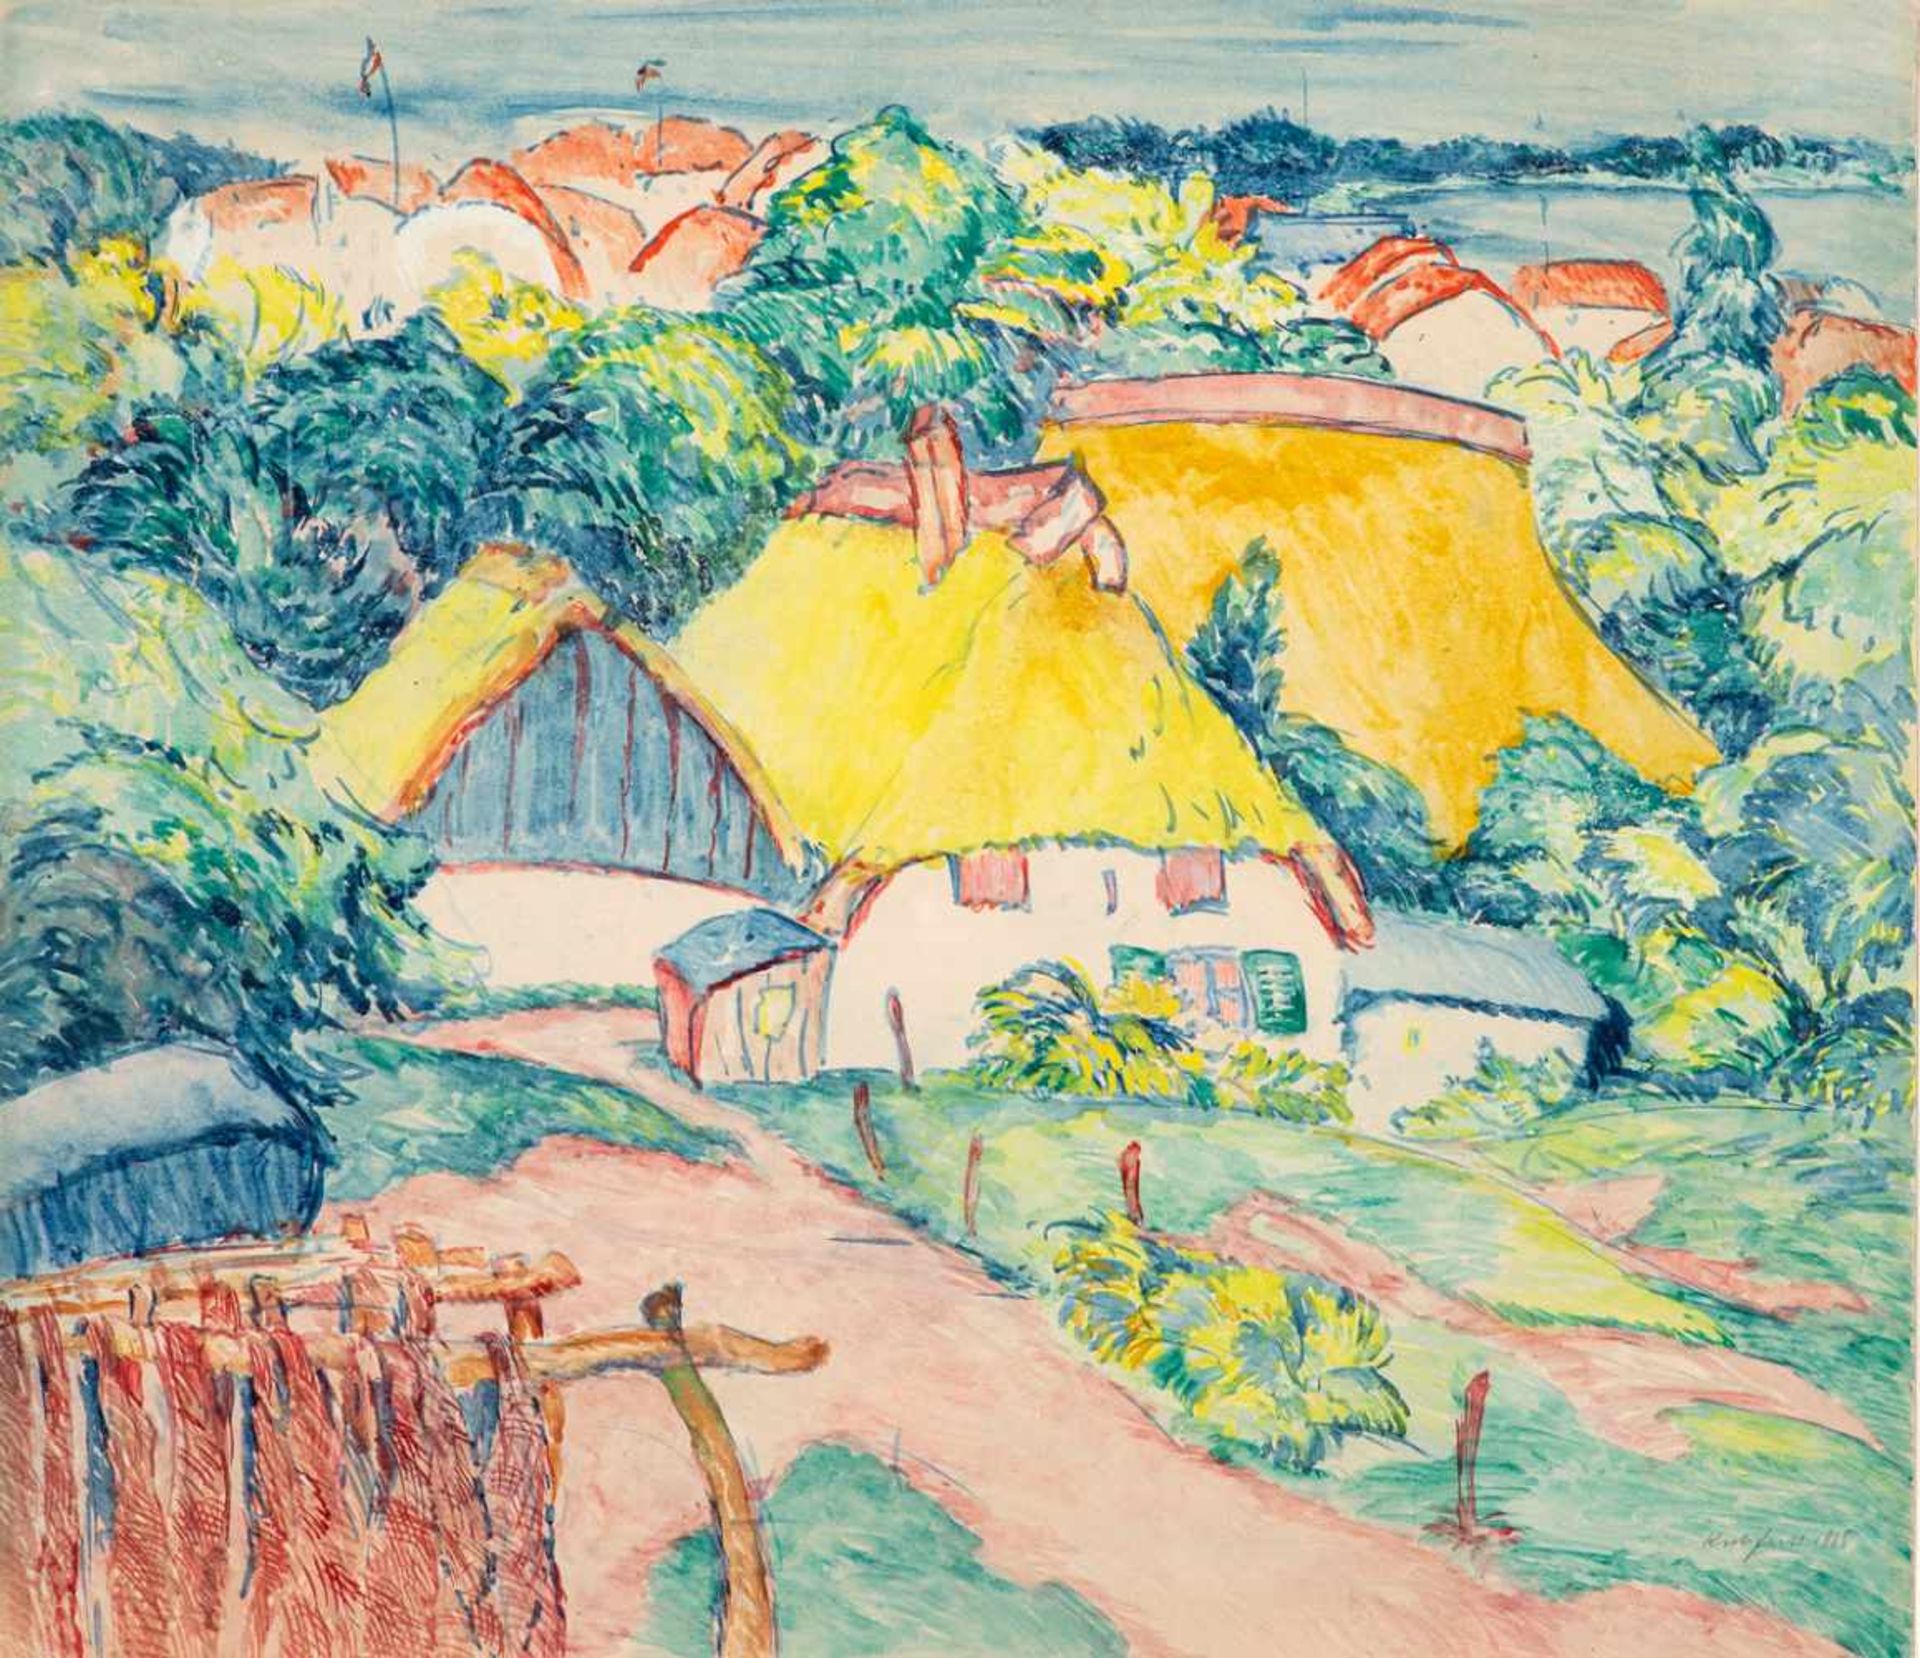 Paul Kuhfuss (1883 - Berlin - 1960)Fischerdorf am Bodden.Aquarell. 1915. 395 x 457 mm. U. r.